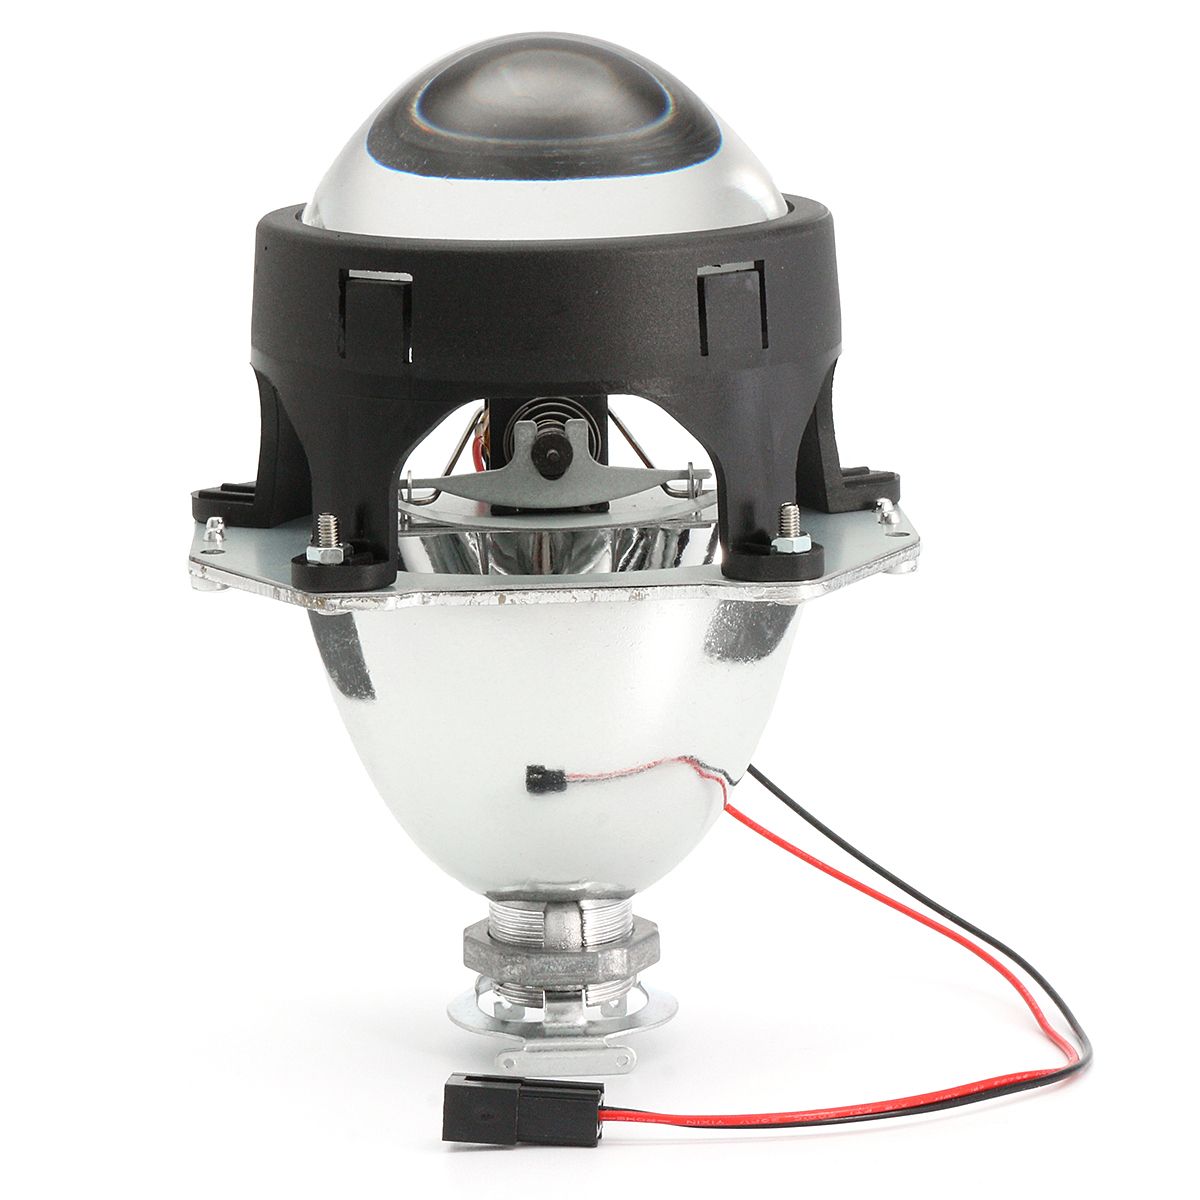 3Inch-Mini-Bi-xenon-Car-HID-Headlights-Projector-Lens-H4-H7-H1-Bulb-Retrofit-HiLo-Beam-2PCS-1422780